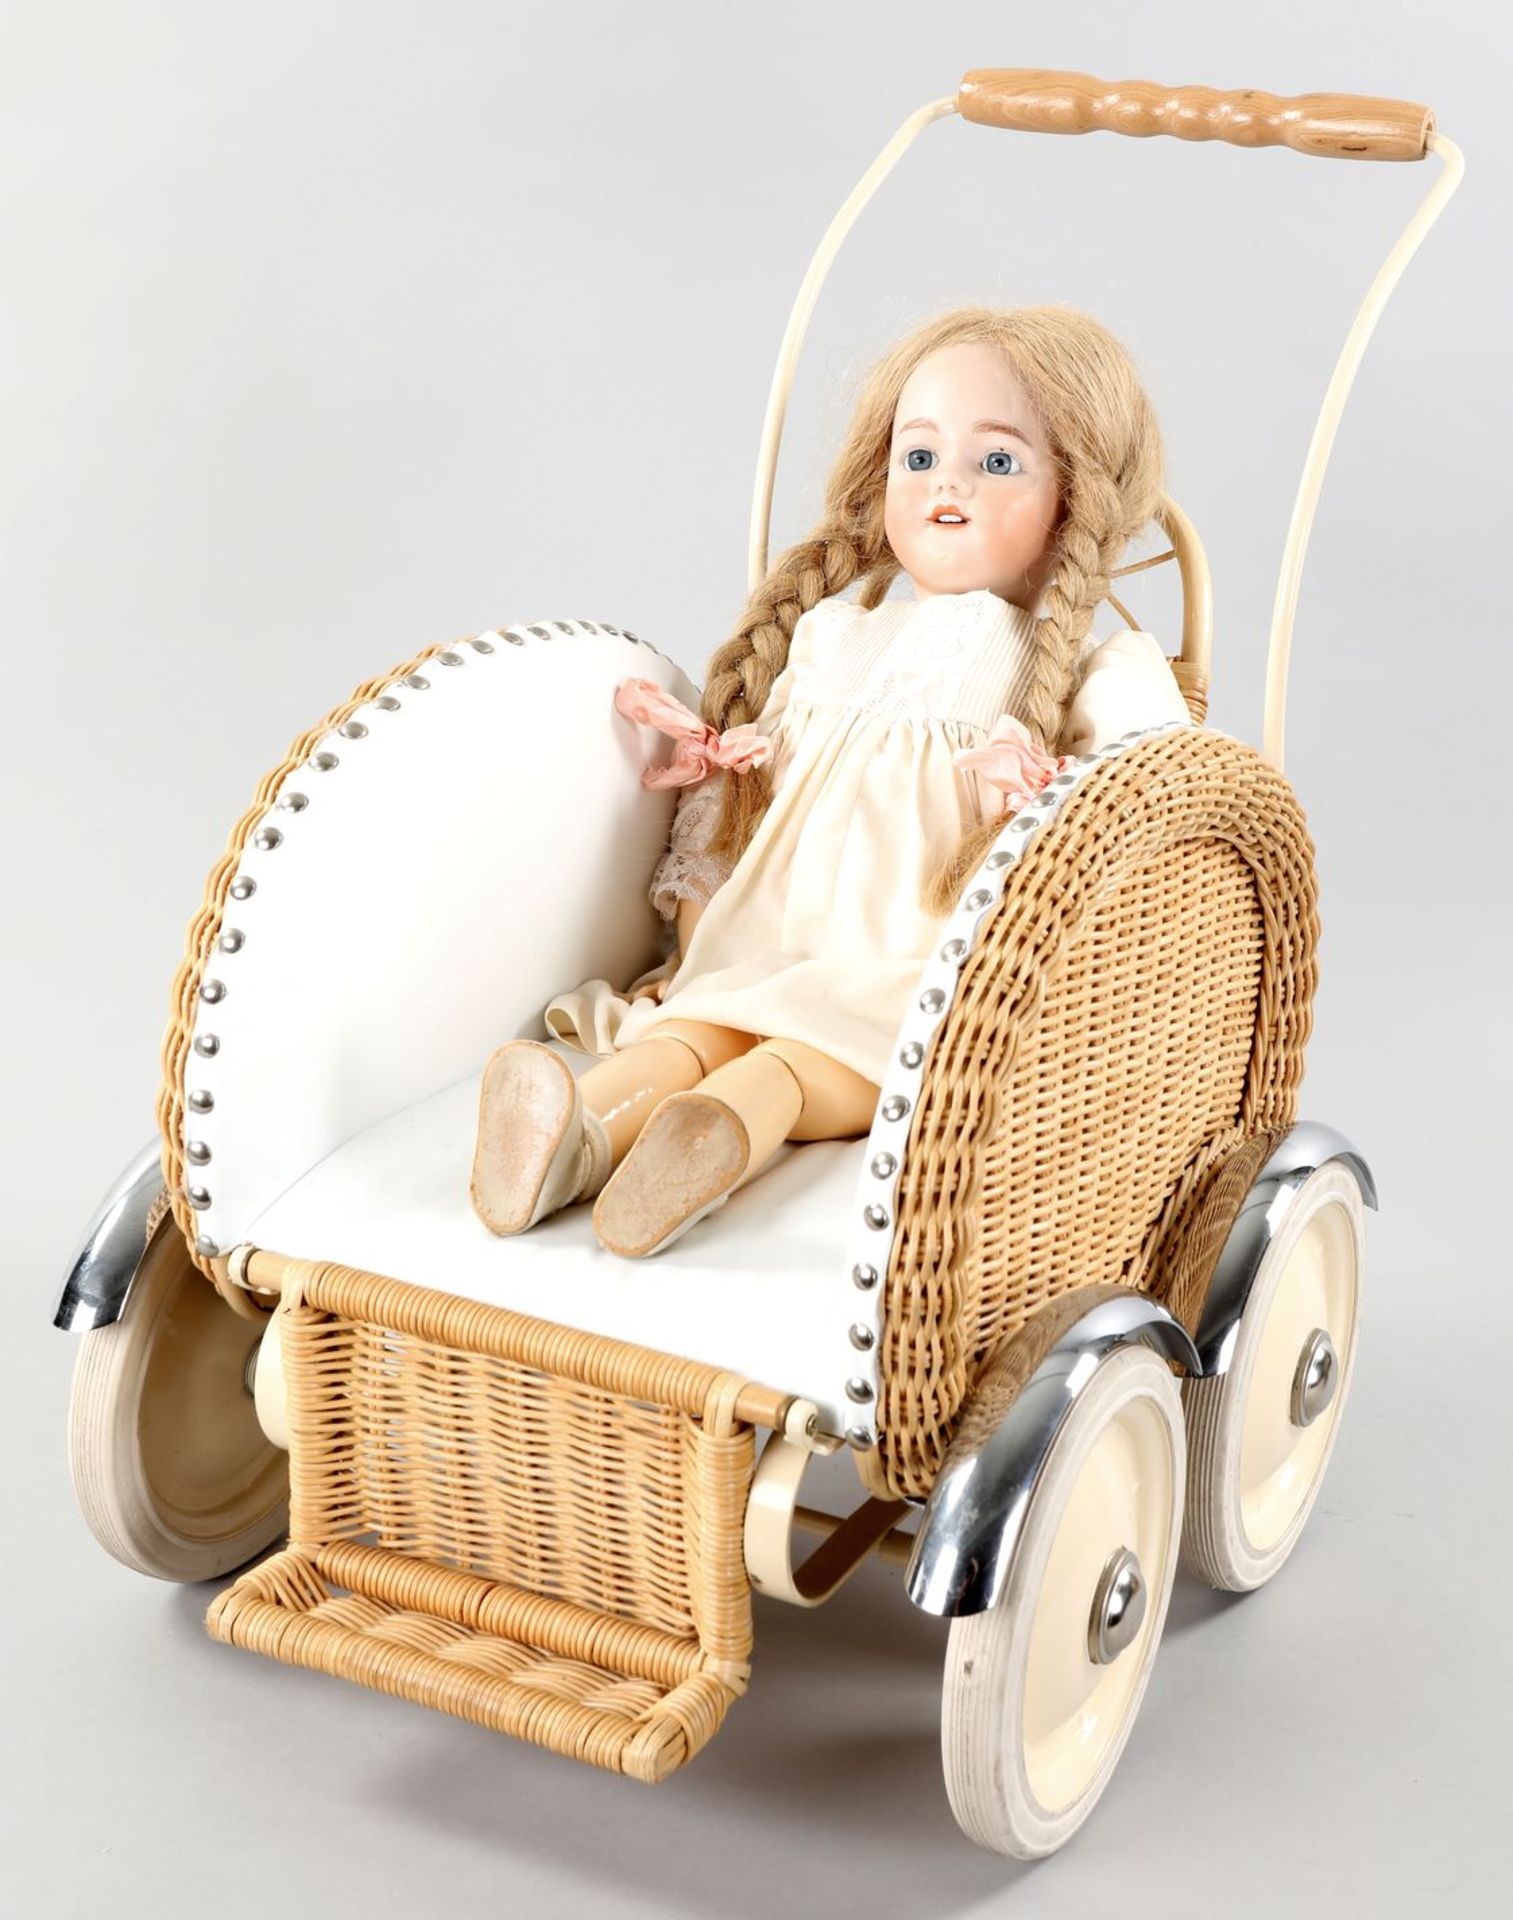 Porzellankopf-Puppe im Kinderwagen